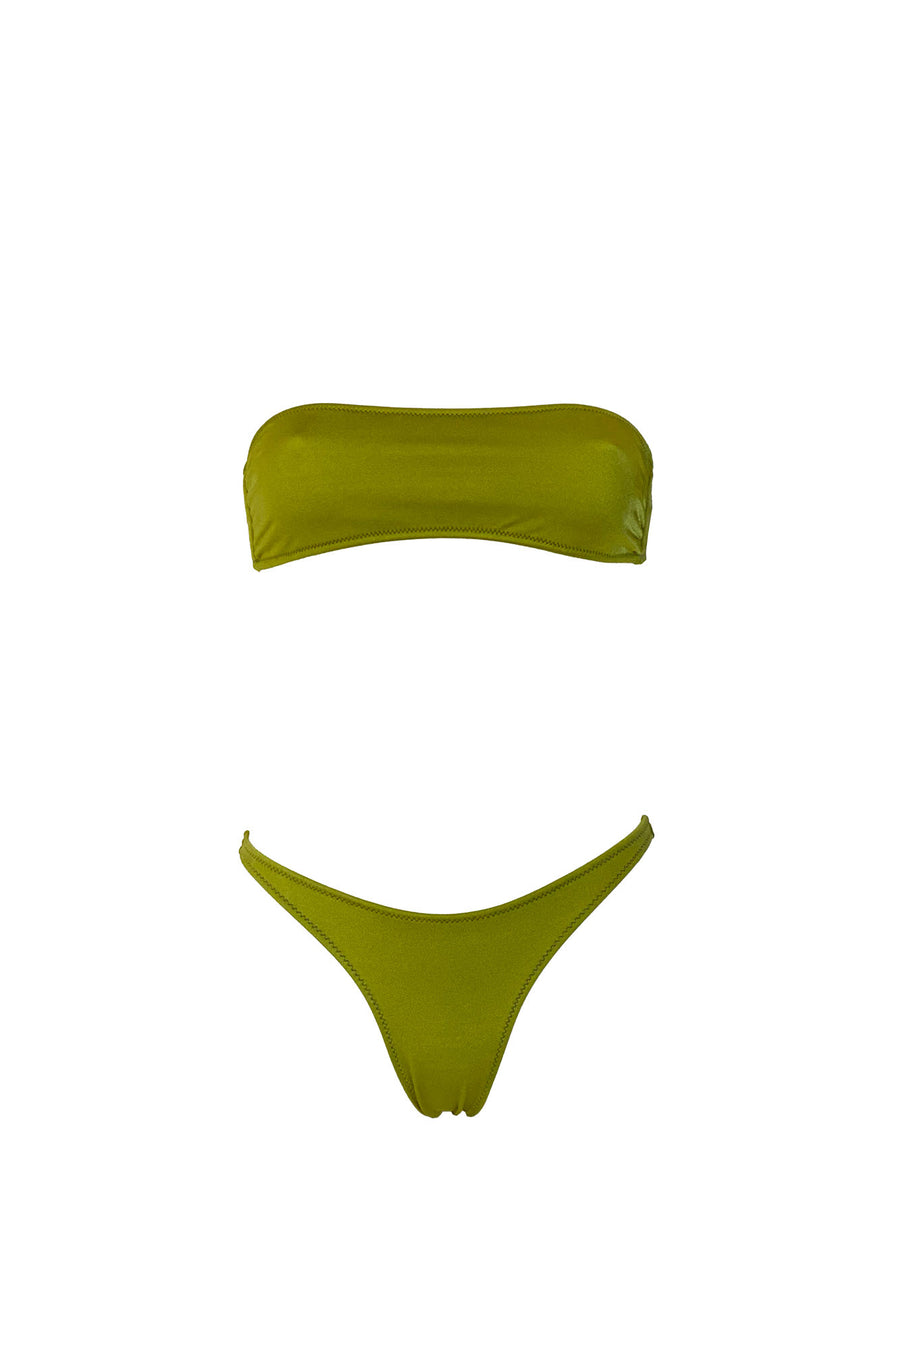 Bikini con fascia tinta unita colore verde satinato con laccetti e cuciture a contrasto colore fucsia Fascia con coppe estraibili Slip con fianco unito 100% Made in Italy 